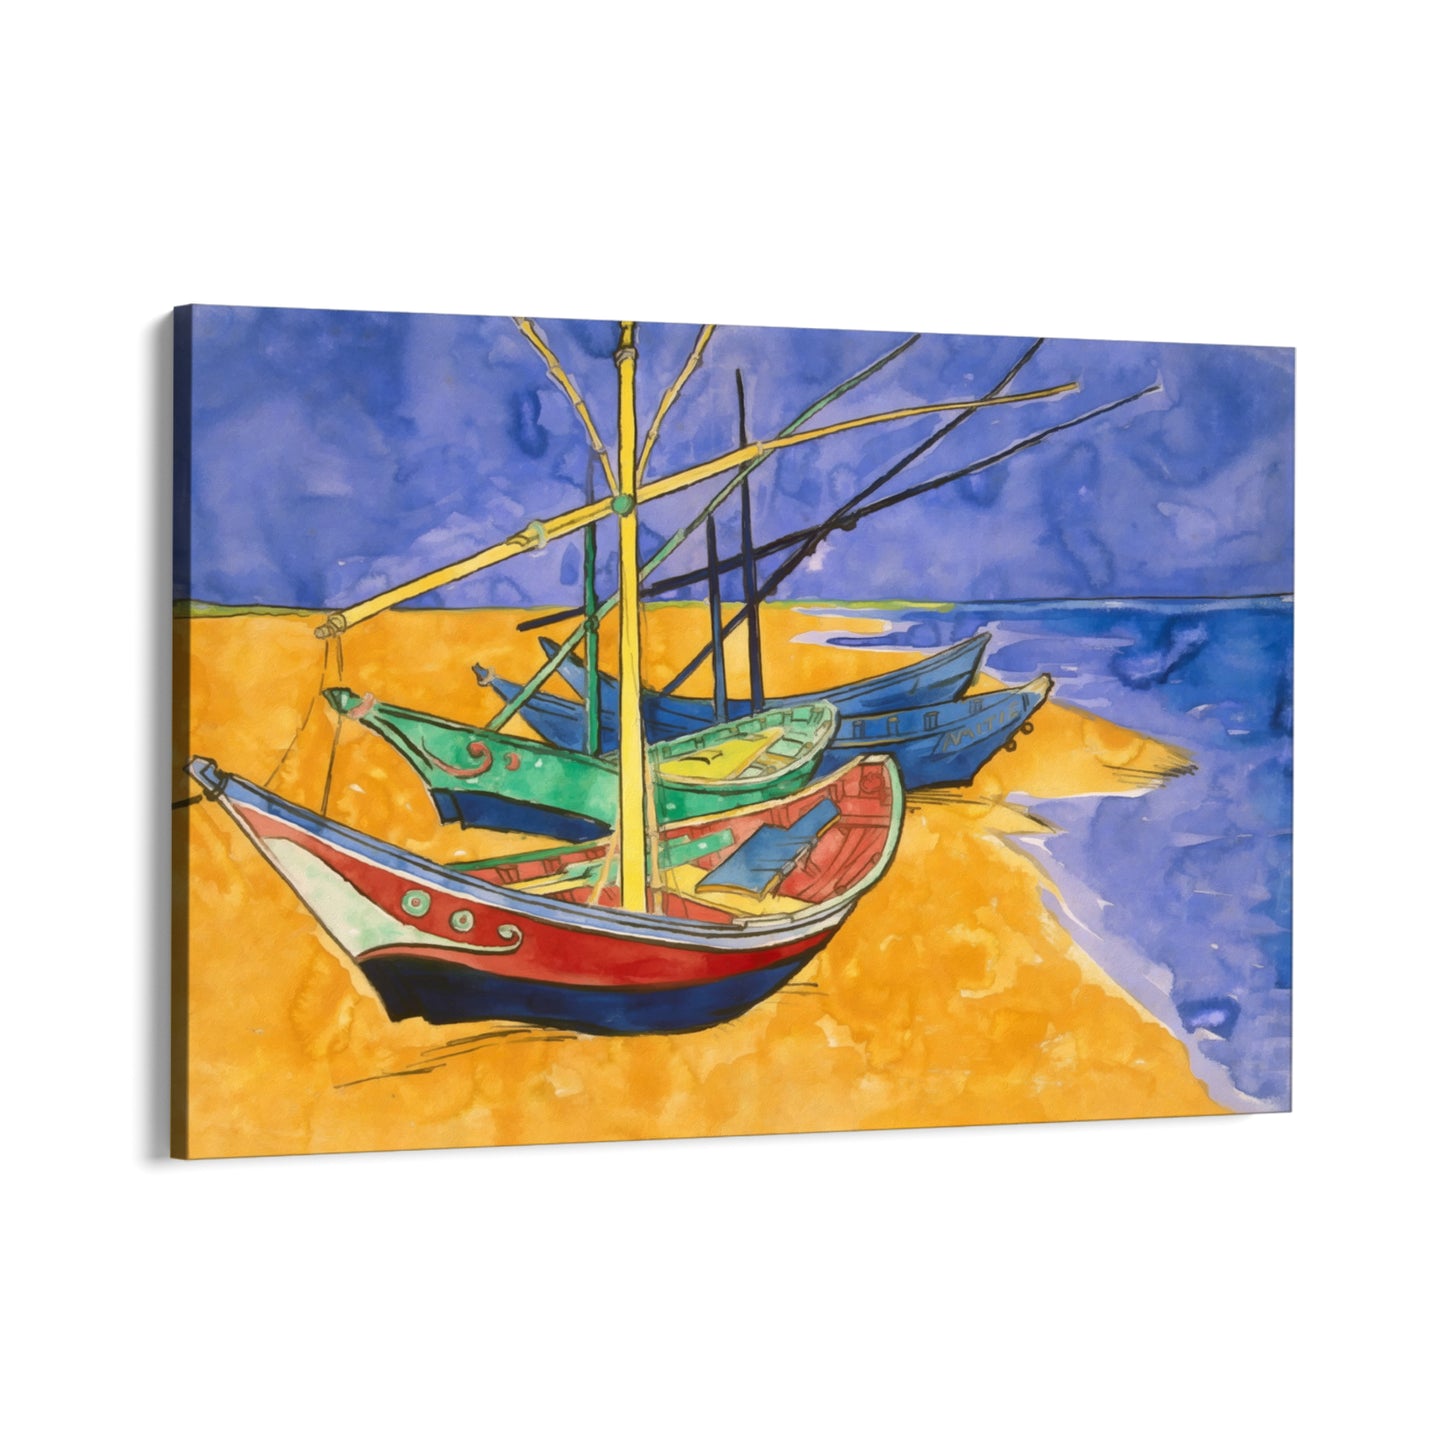 Ψαρόβαρκες στην παραλία I, Vincent Van Gogh